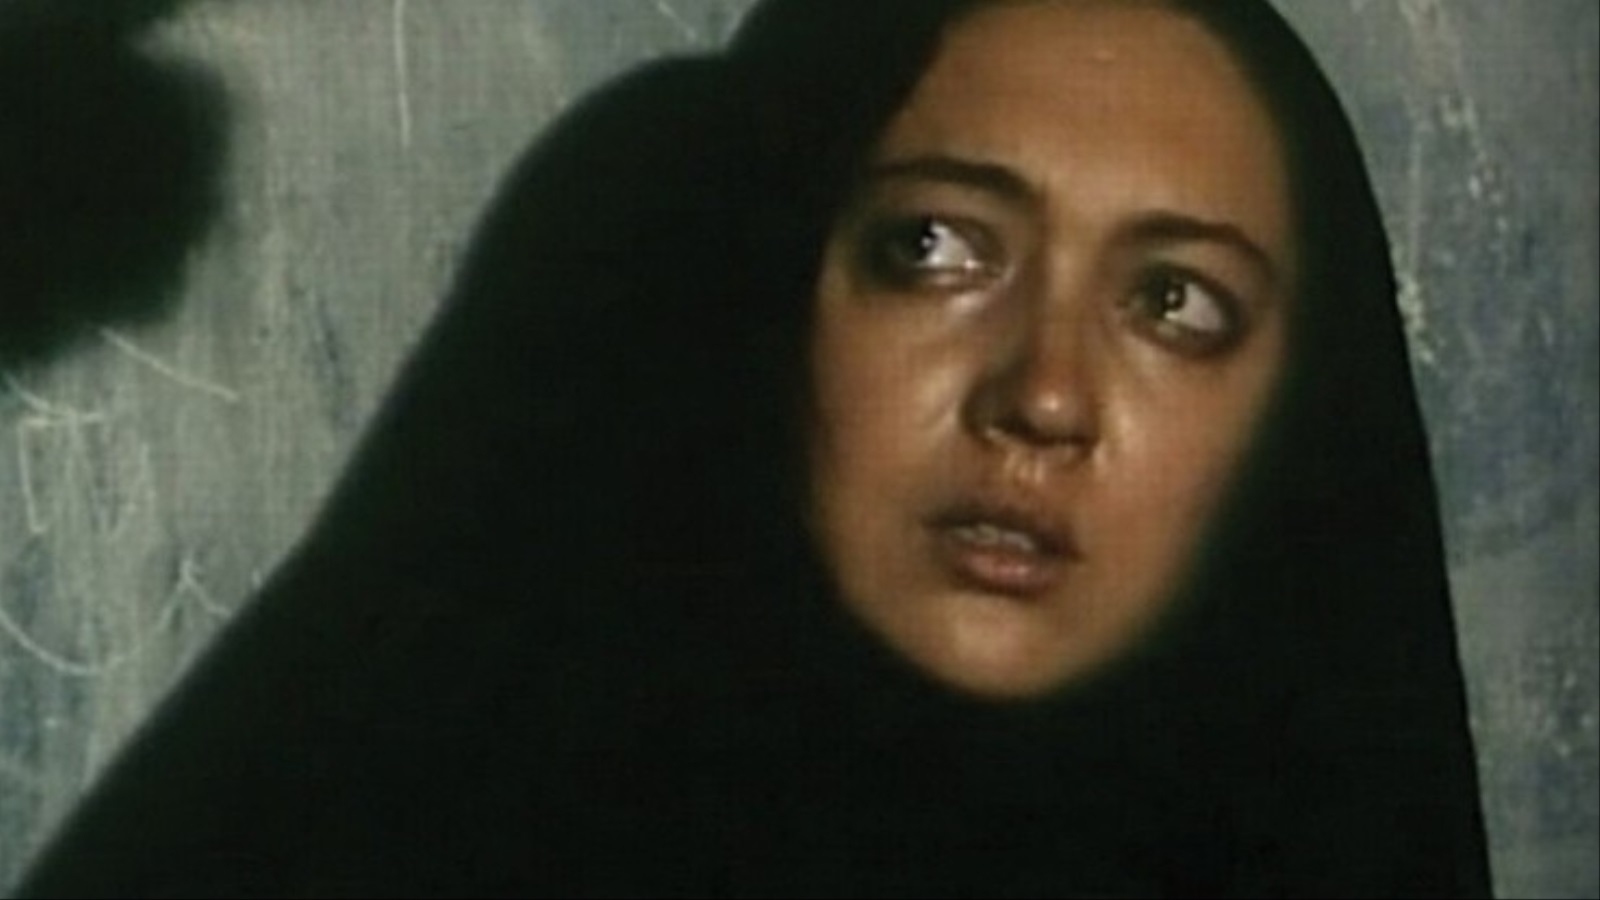 المرأة في السينما الإيرانية انتصارات تحت وطأة القمع الجزيرة نت